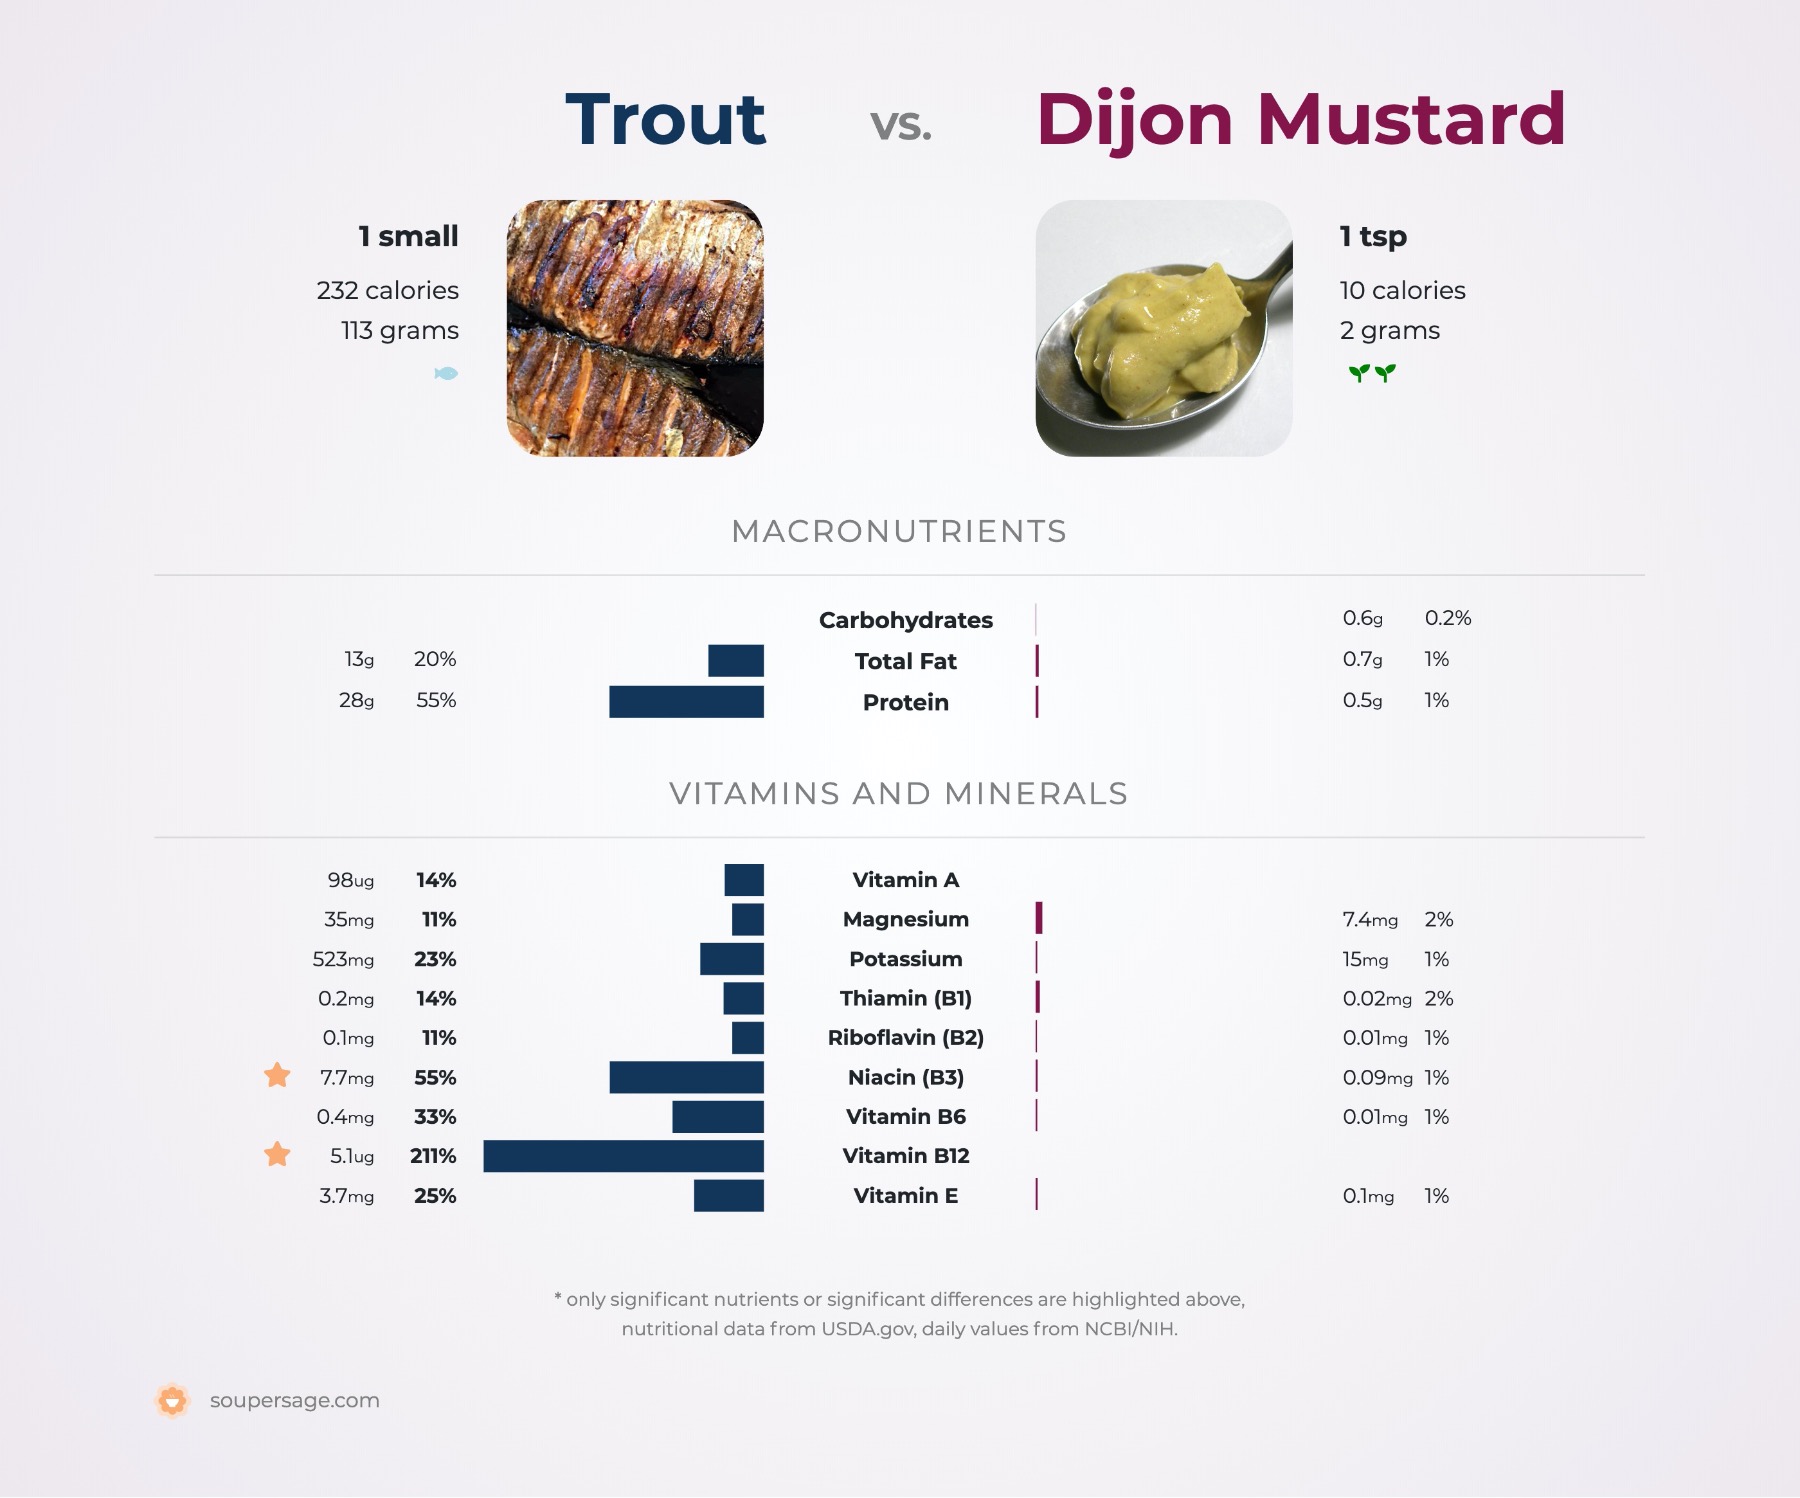 nutrition comparison of trout vs. dijon mustard